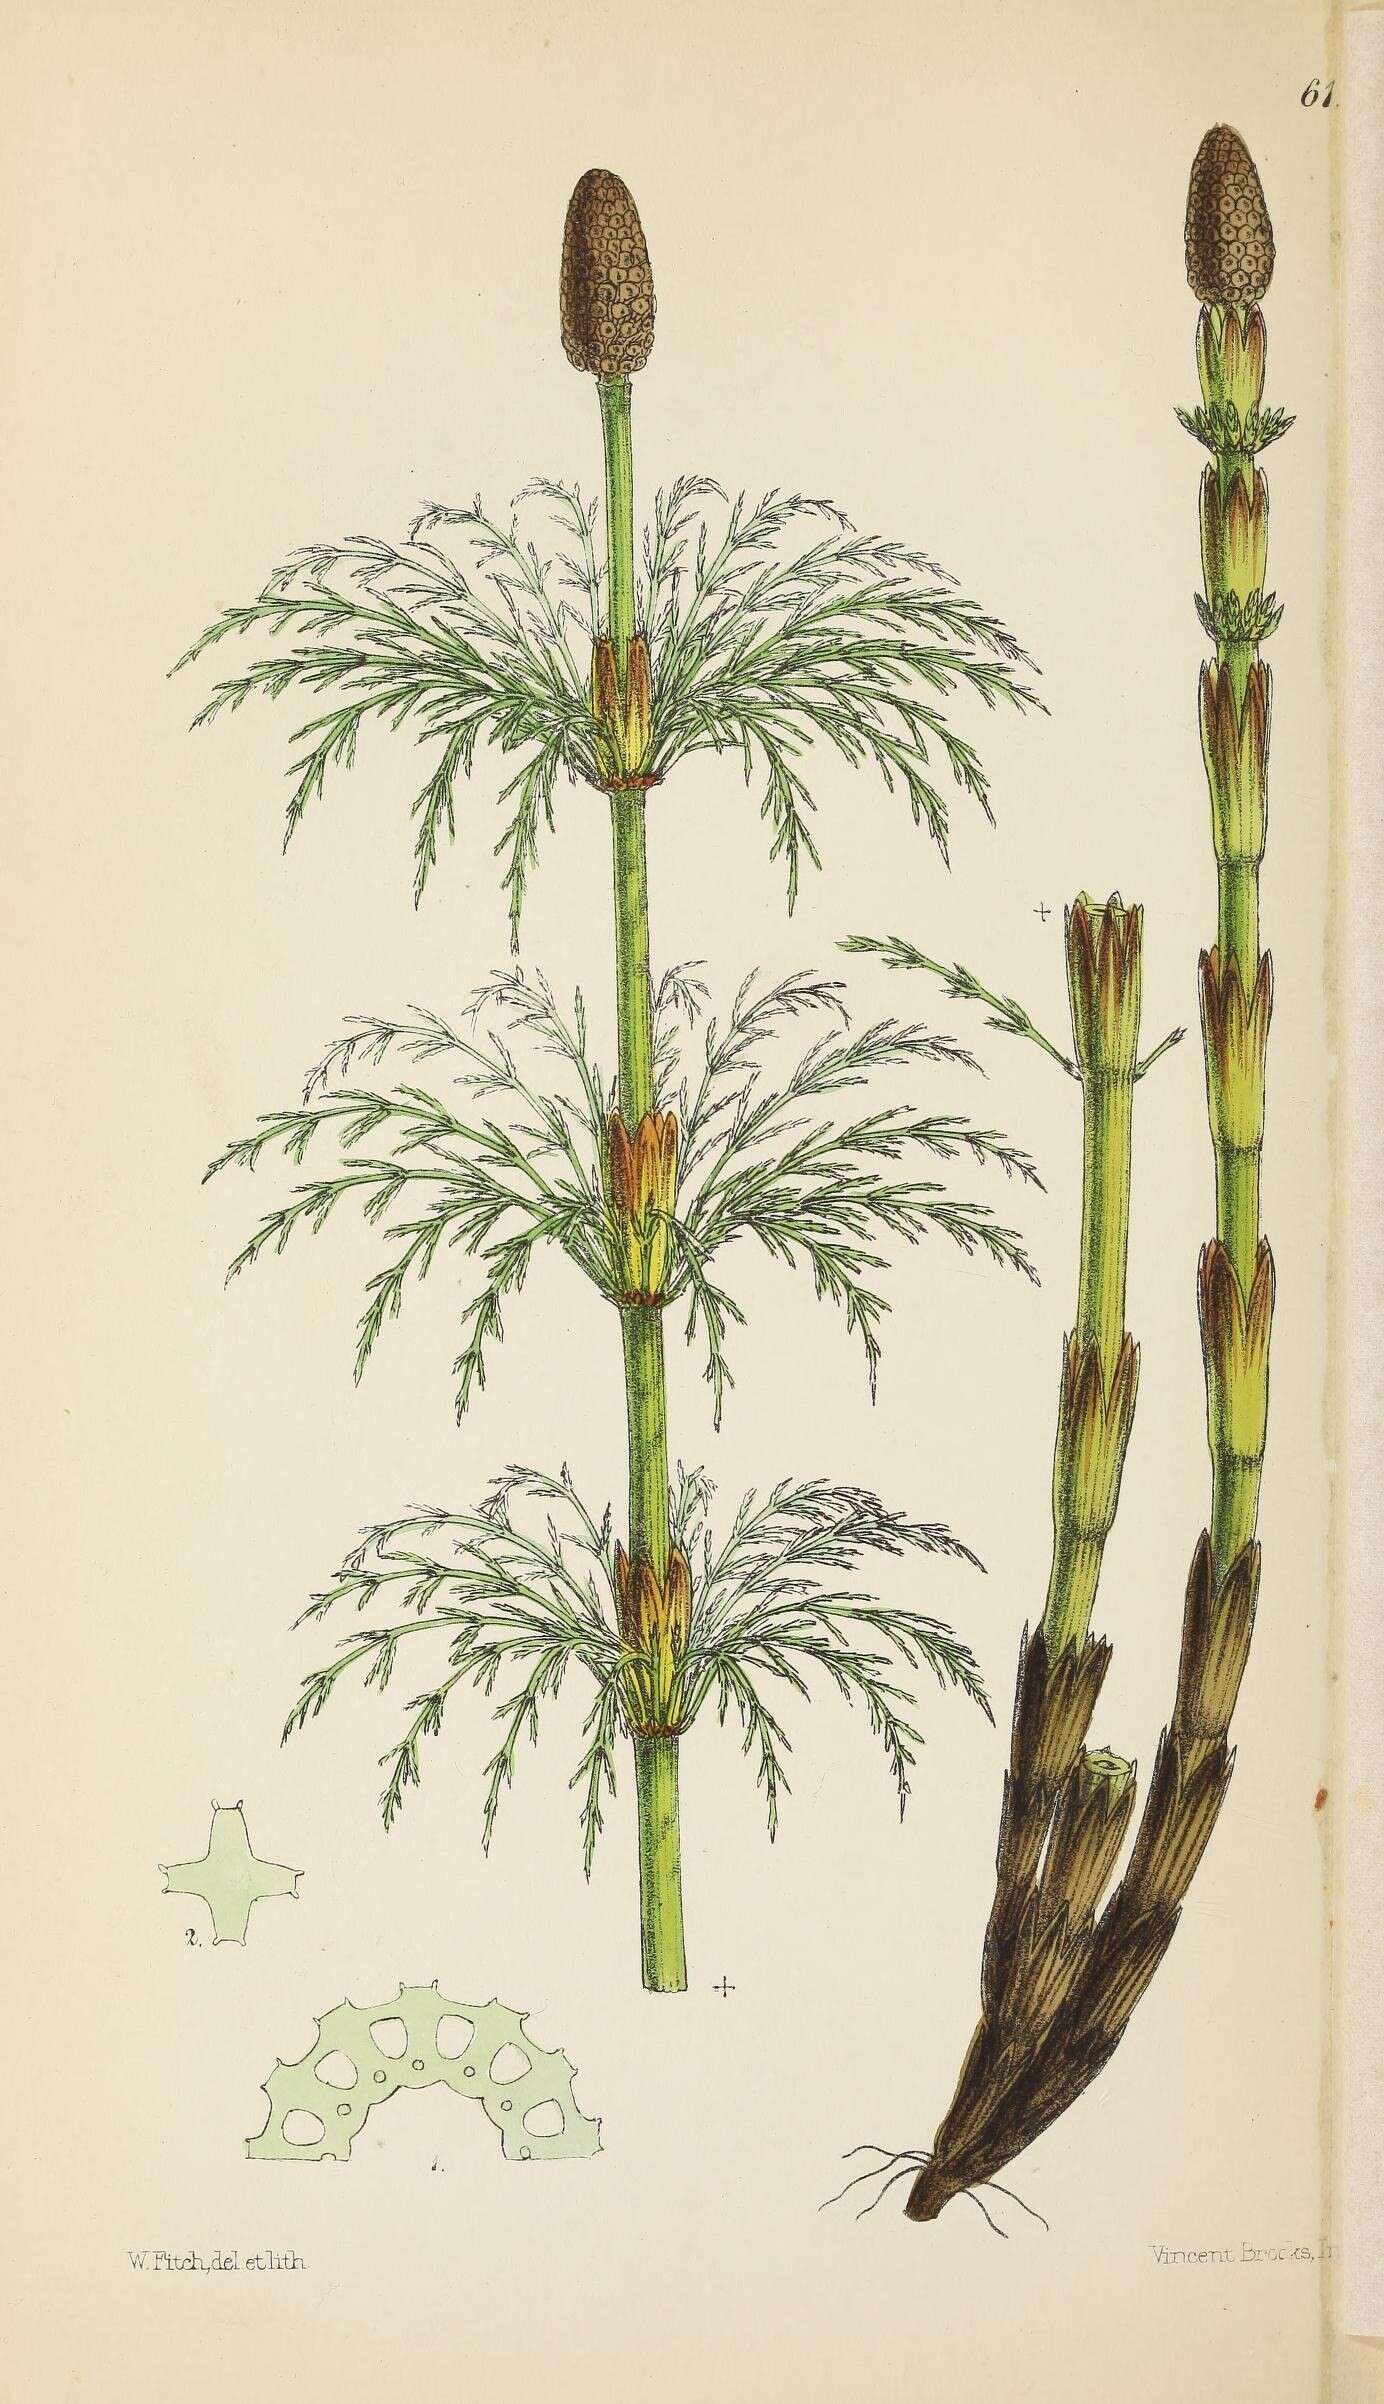 Equisetum sylvaticum L. resmi